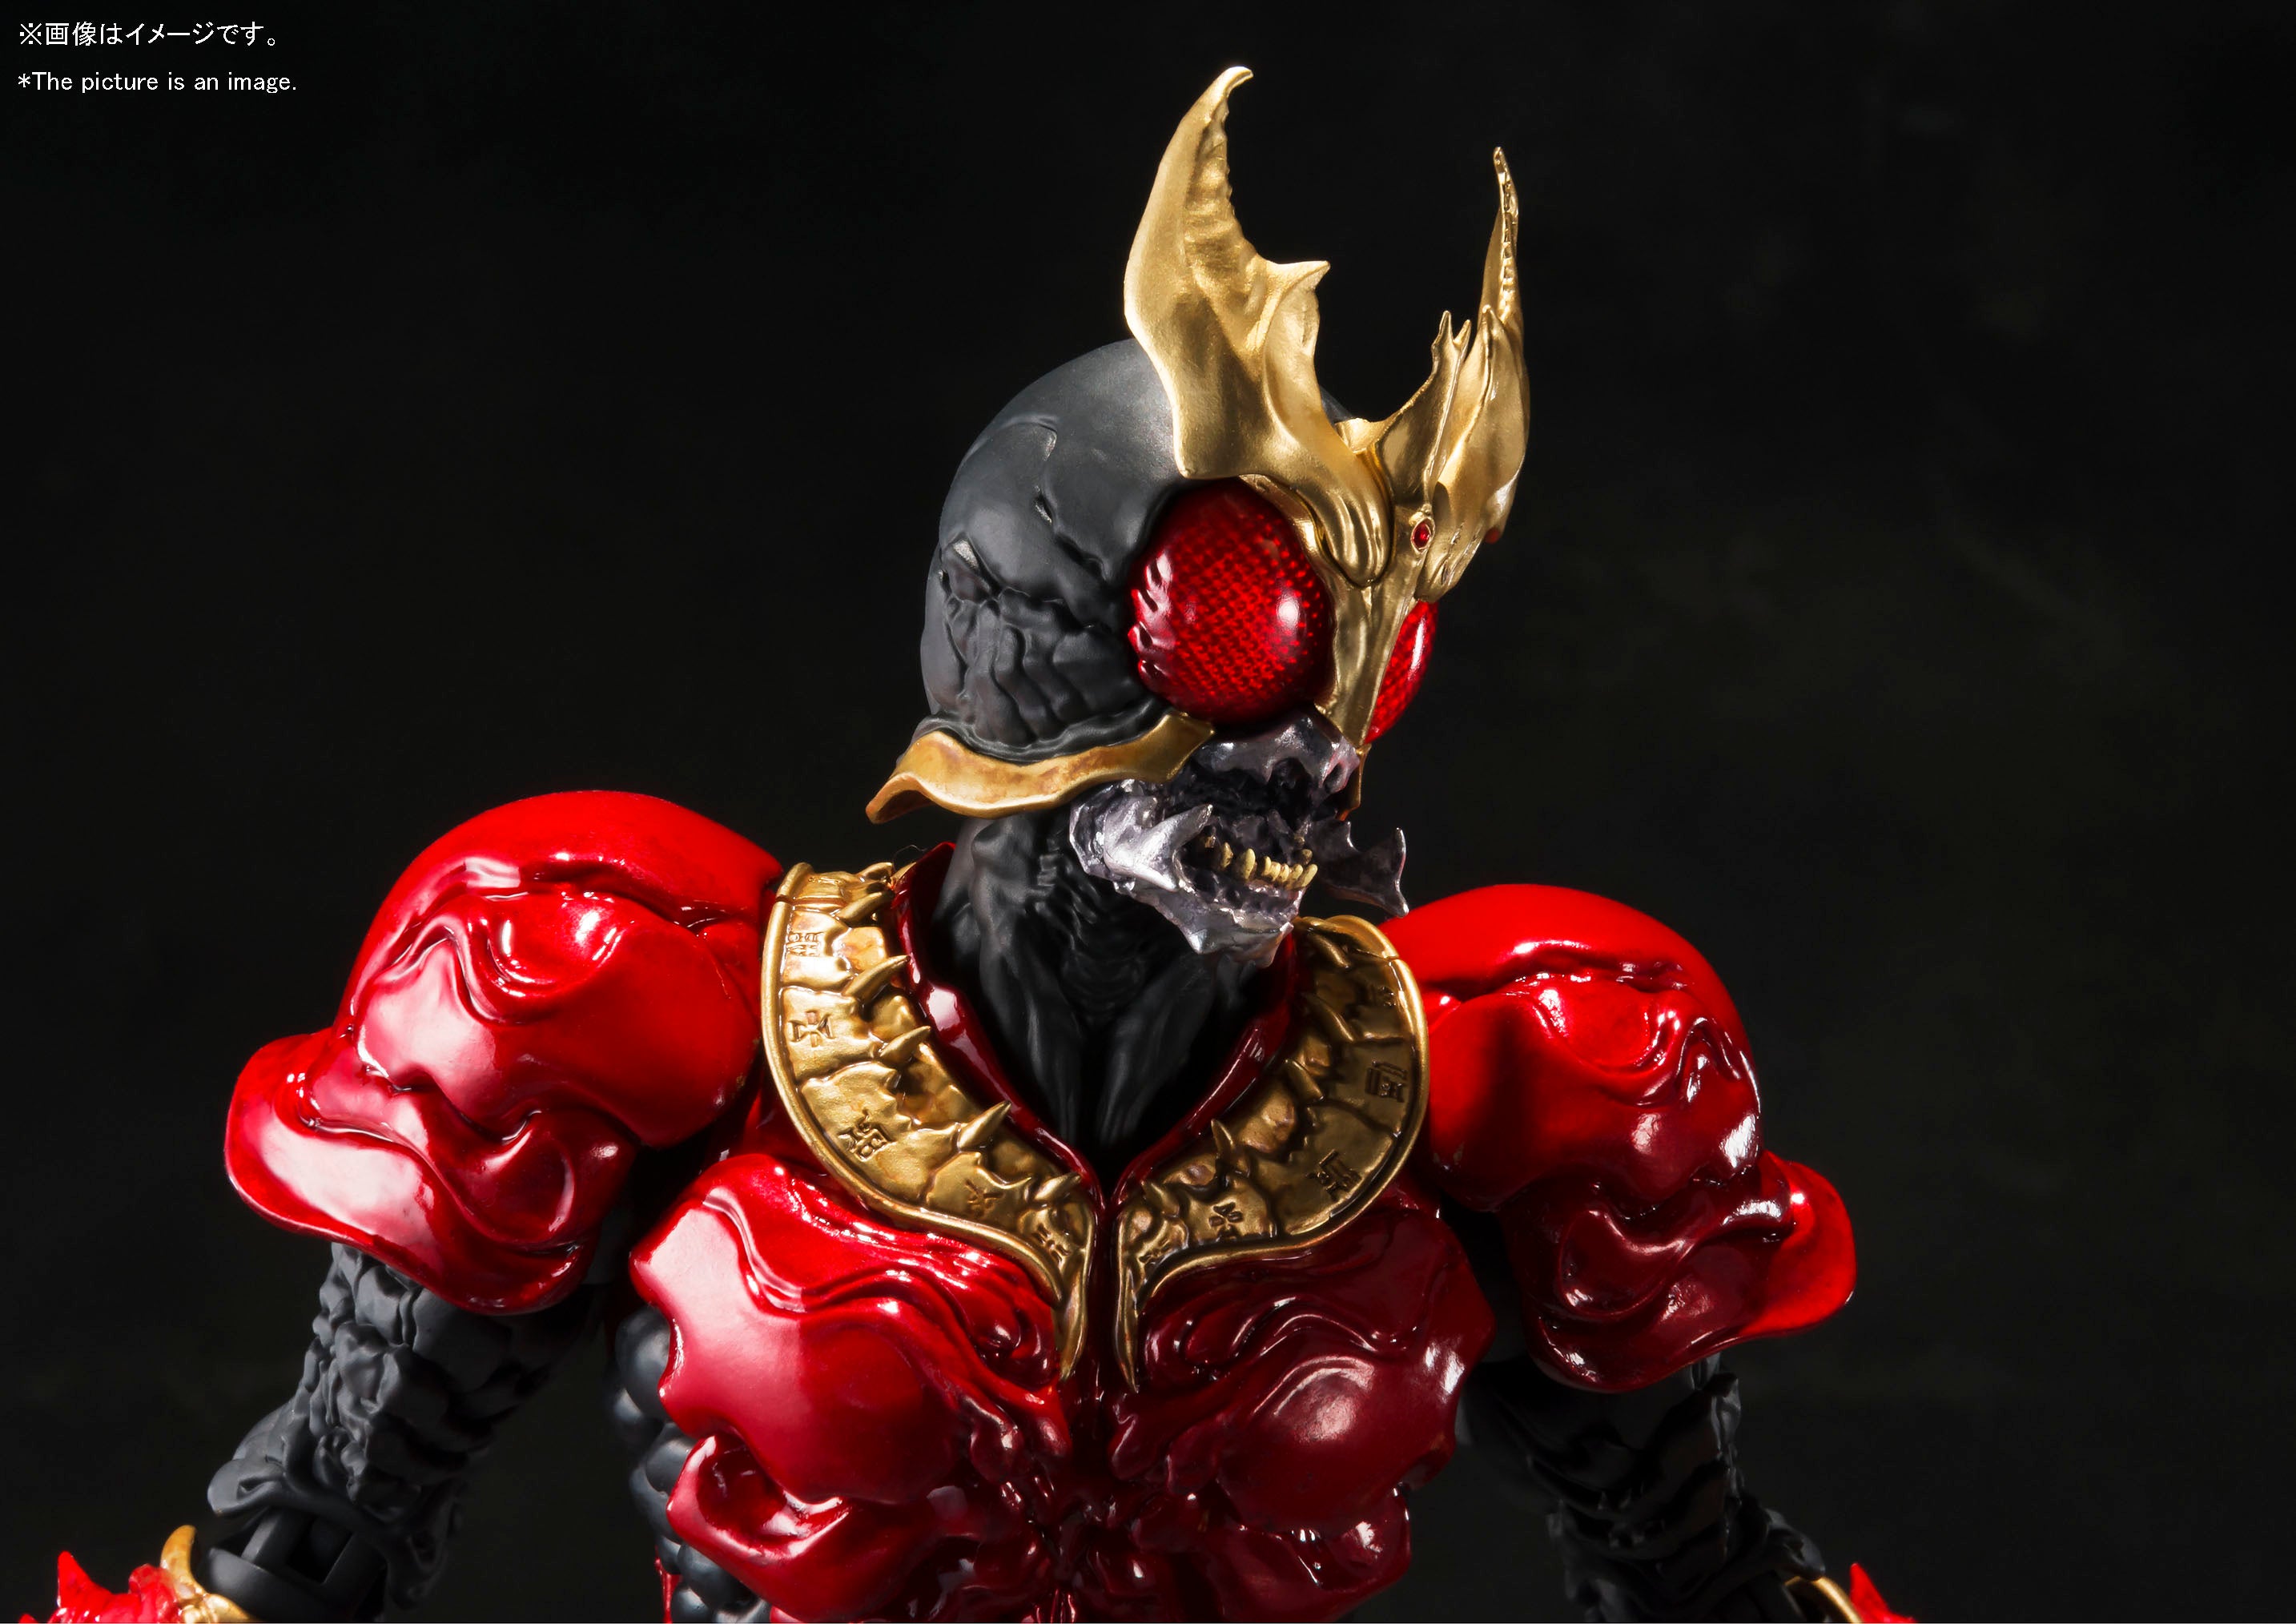 S.I.C. Masked Rider Kuuga Mighty Form